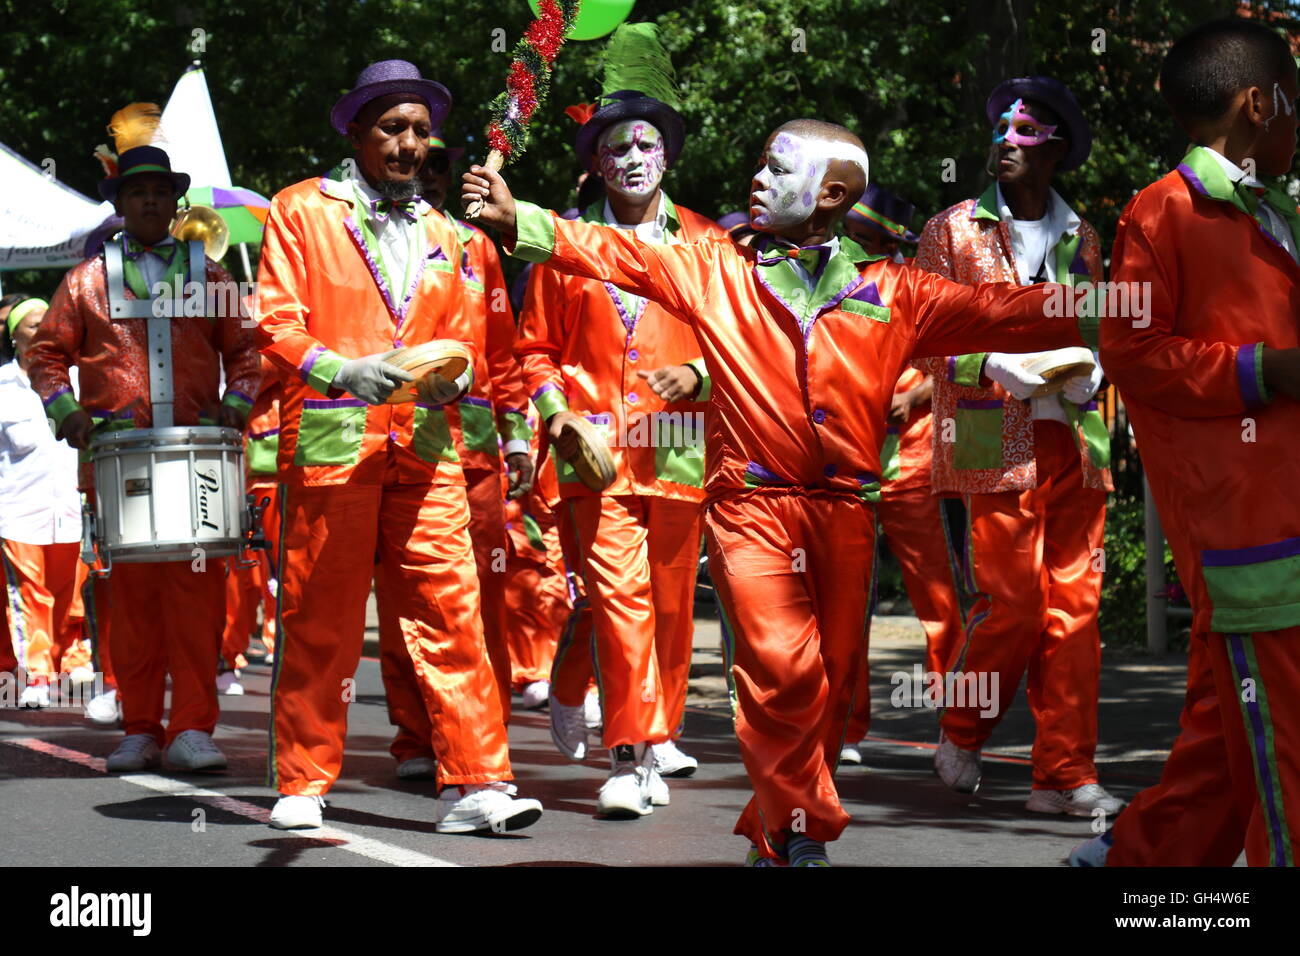 Les hommes africains dans des tenues orange et visages peints à la parade des vins de Stellenbosch 2016 faire de la musique à l'aide de tambours et tambourins Banque D'Images